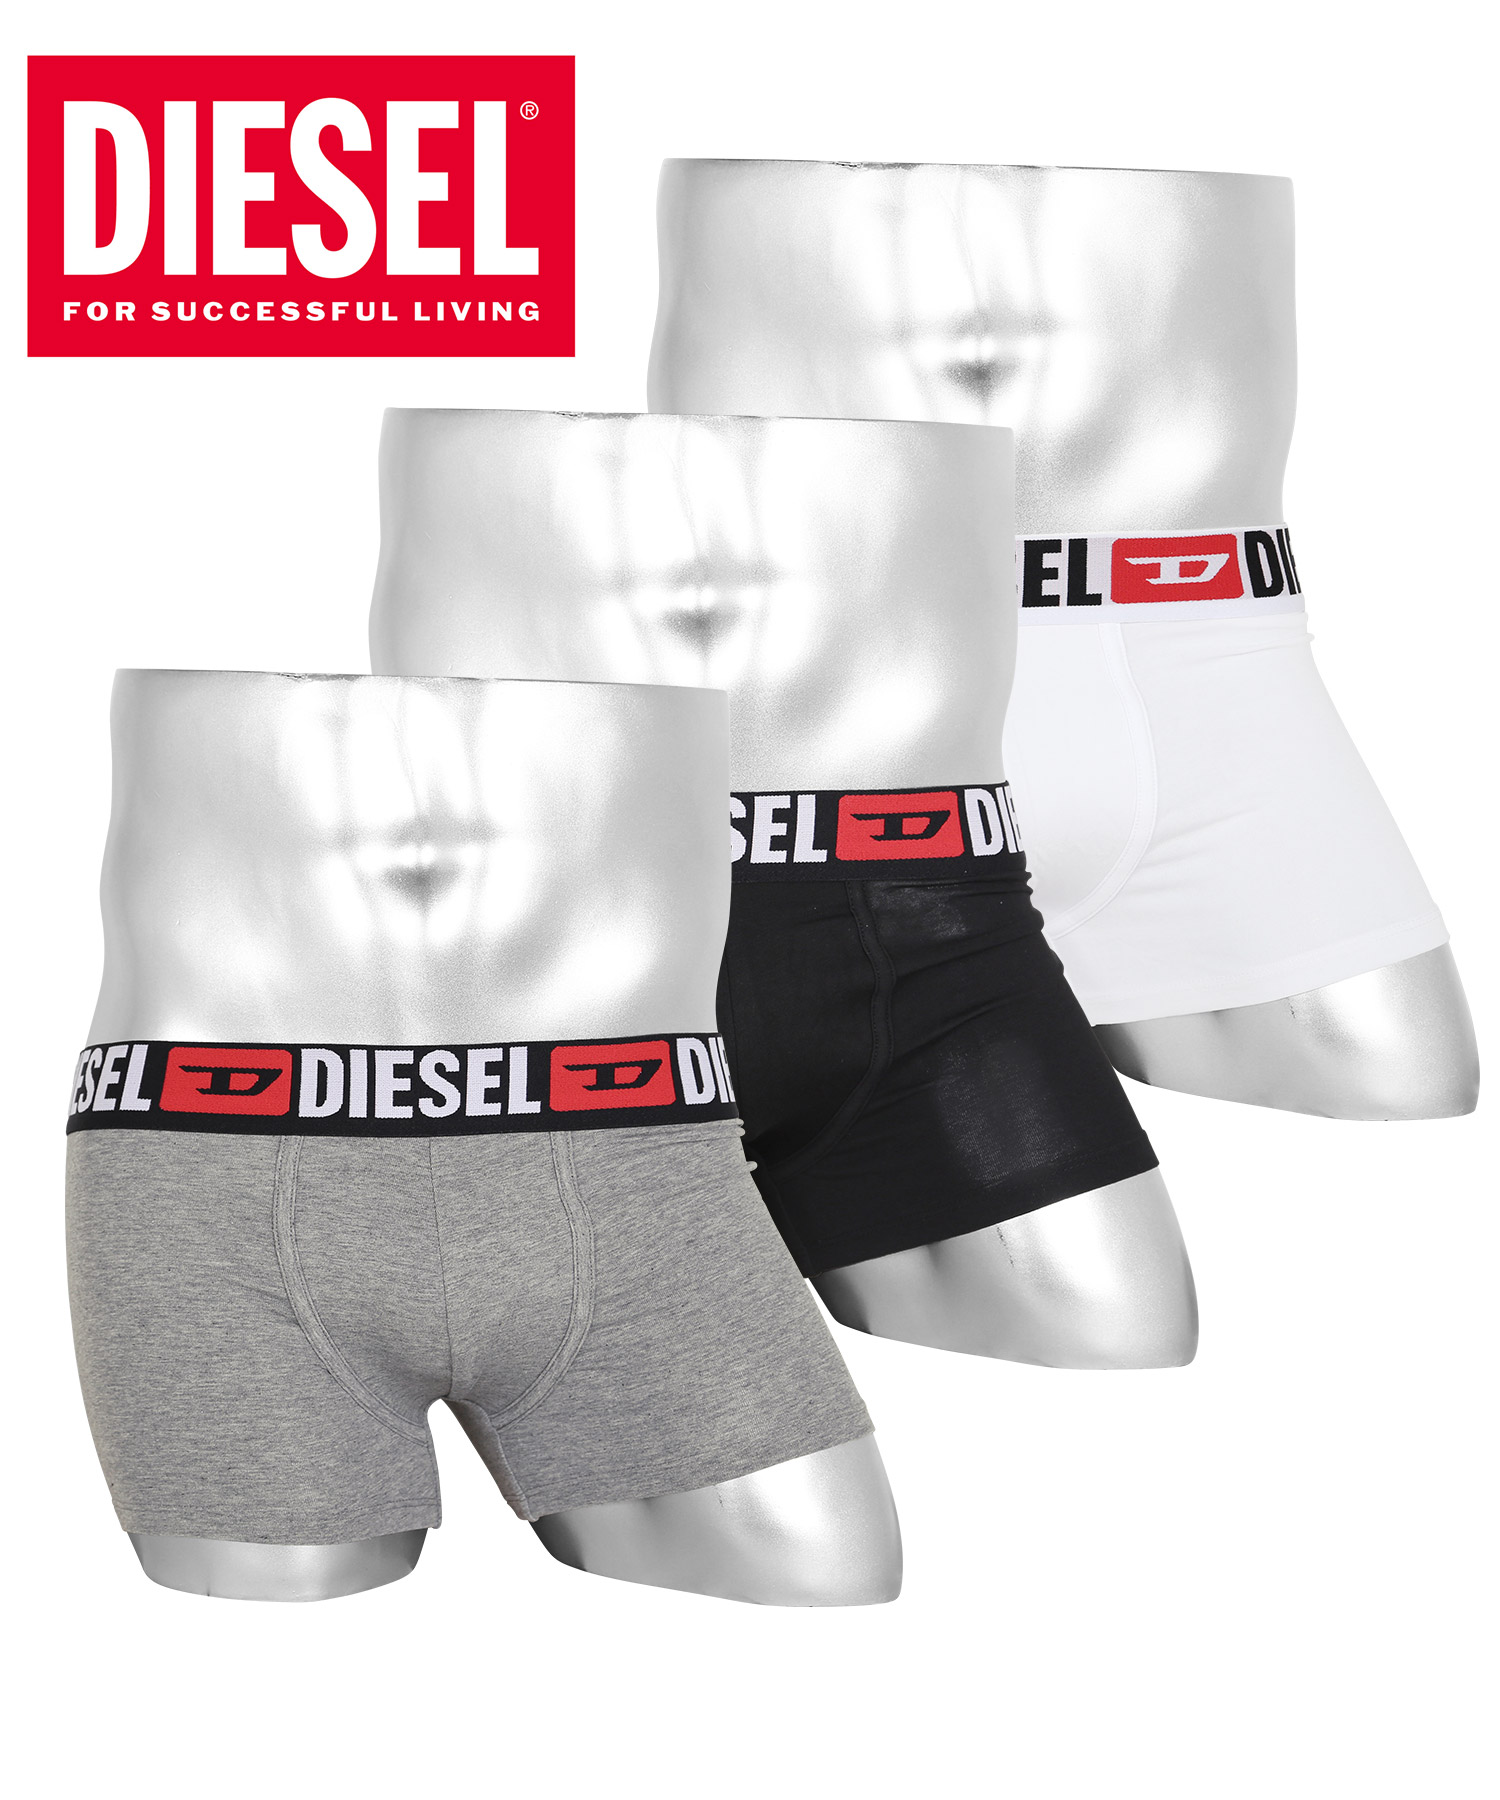 ディーゼル DIESEL ローライズボクサーパンツ 3枚セット メンズ アンダーウェア 男性 下着 綿混 コットン ブランド ロゴ プレゼント ギフト